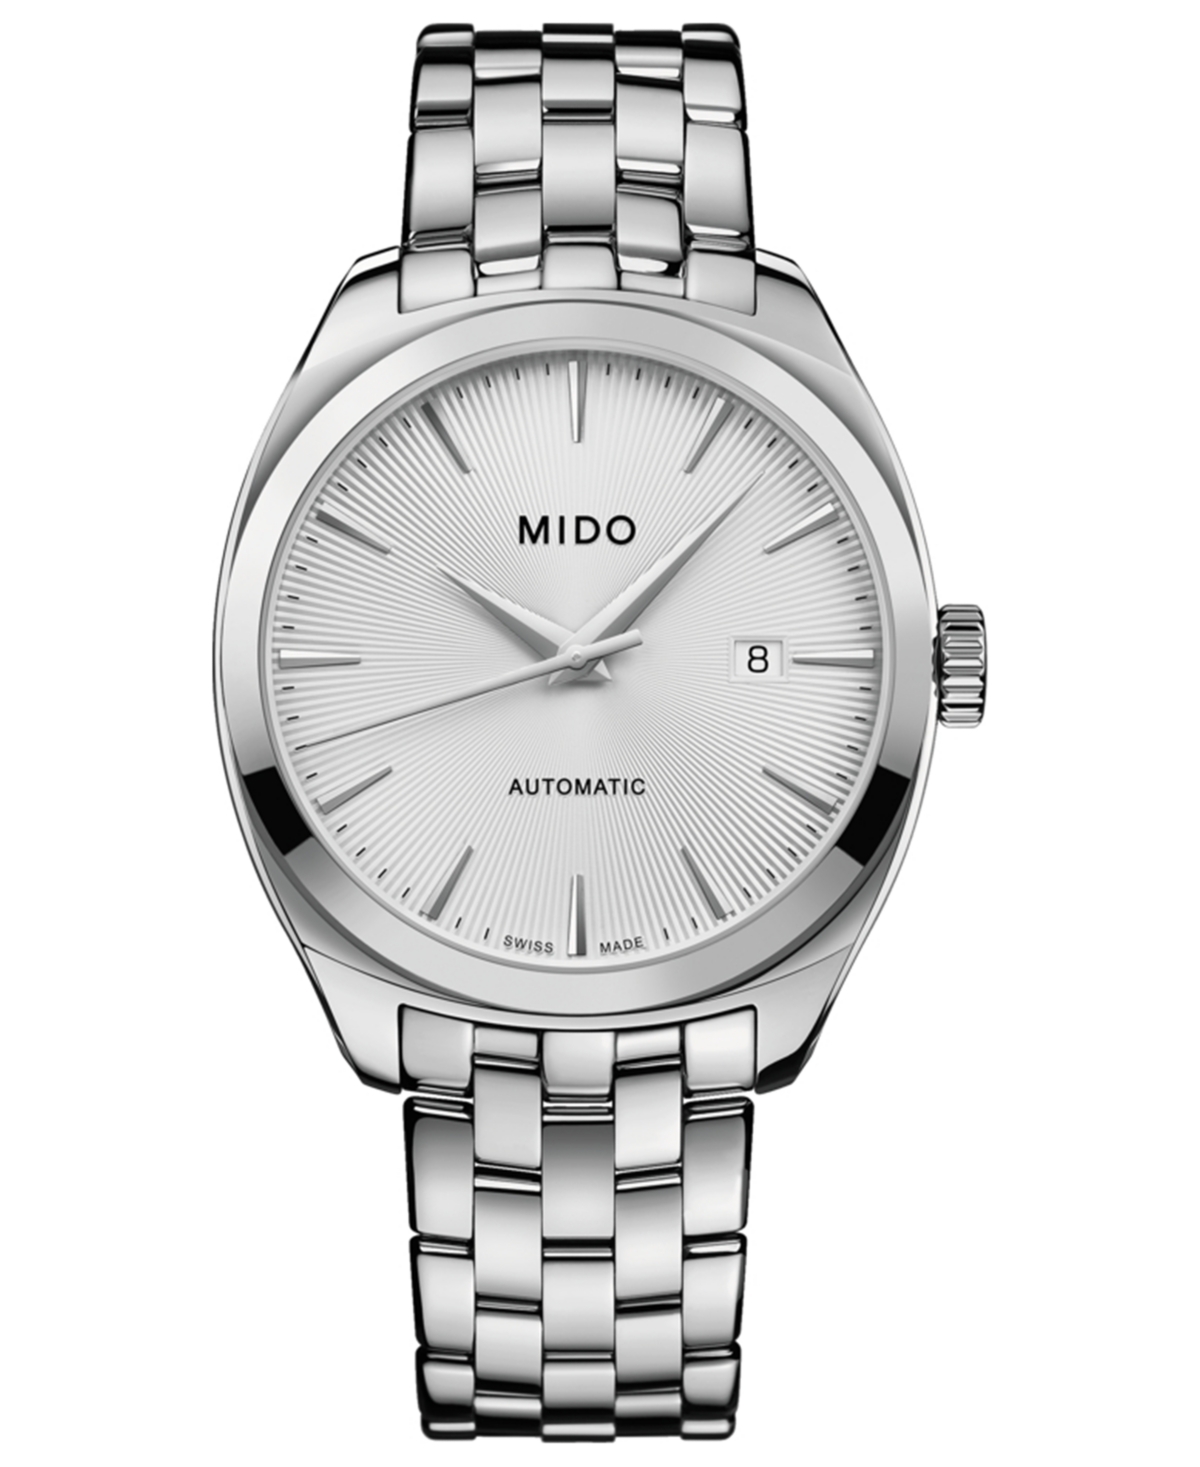 Mido Men's Swiss Automatic Belluna Royal Stainless Steel Bracelet Watch 41mm In Silver-tone